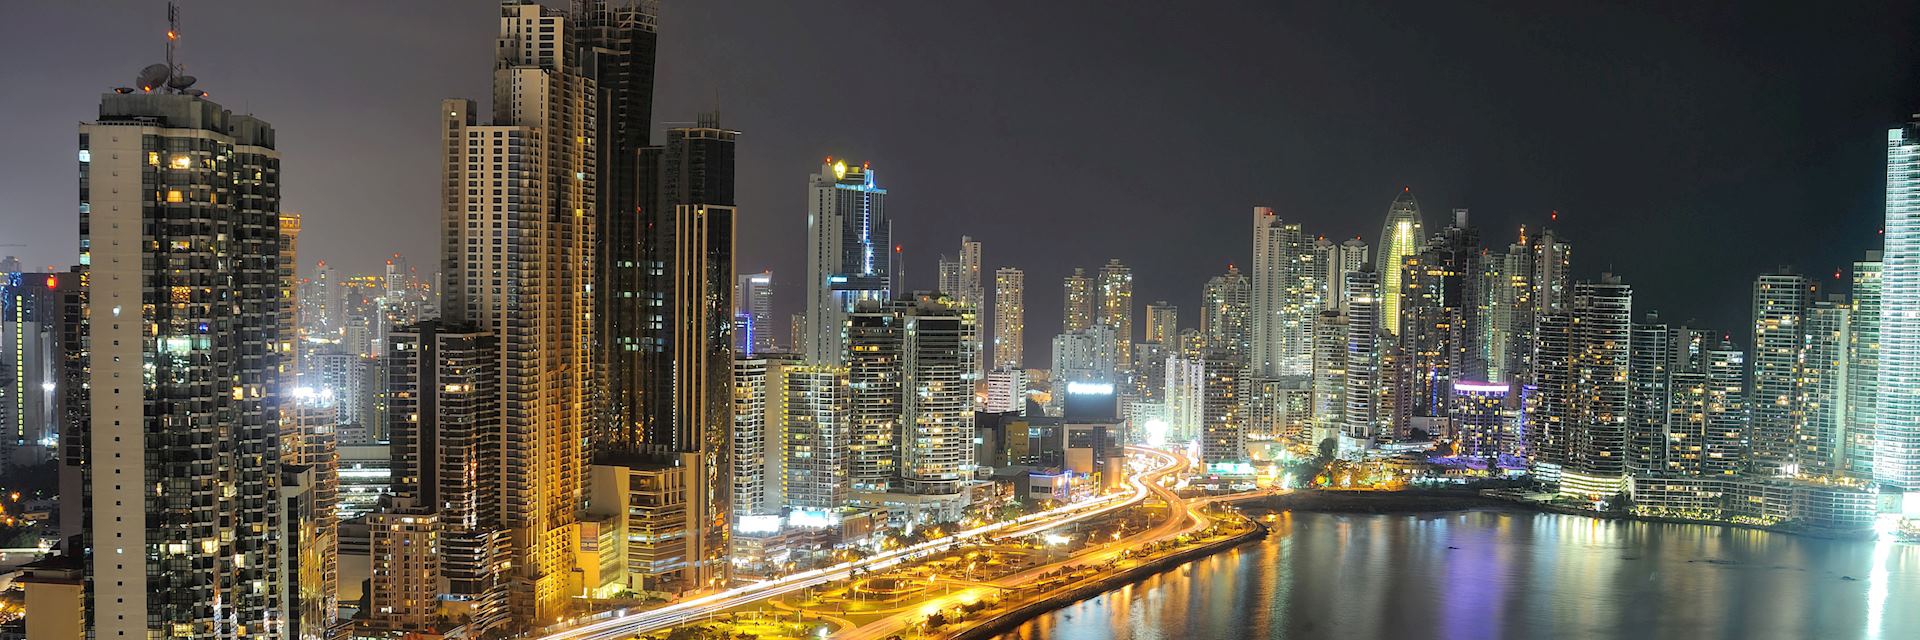 Panama City skyline at night